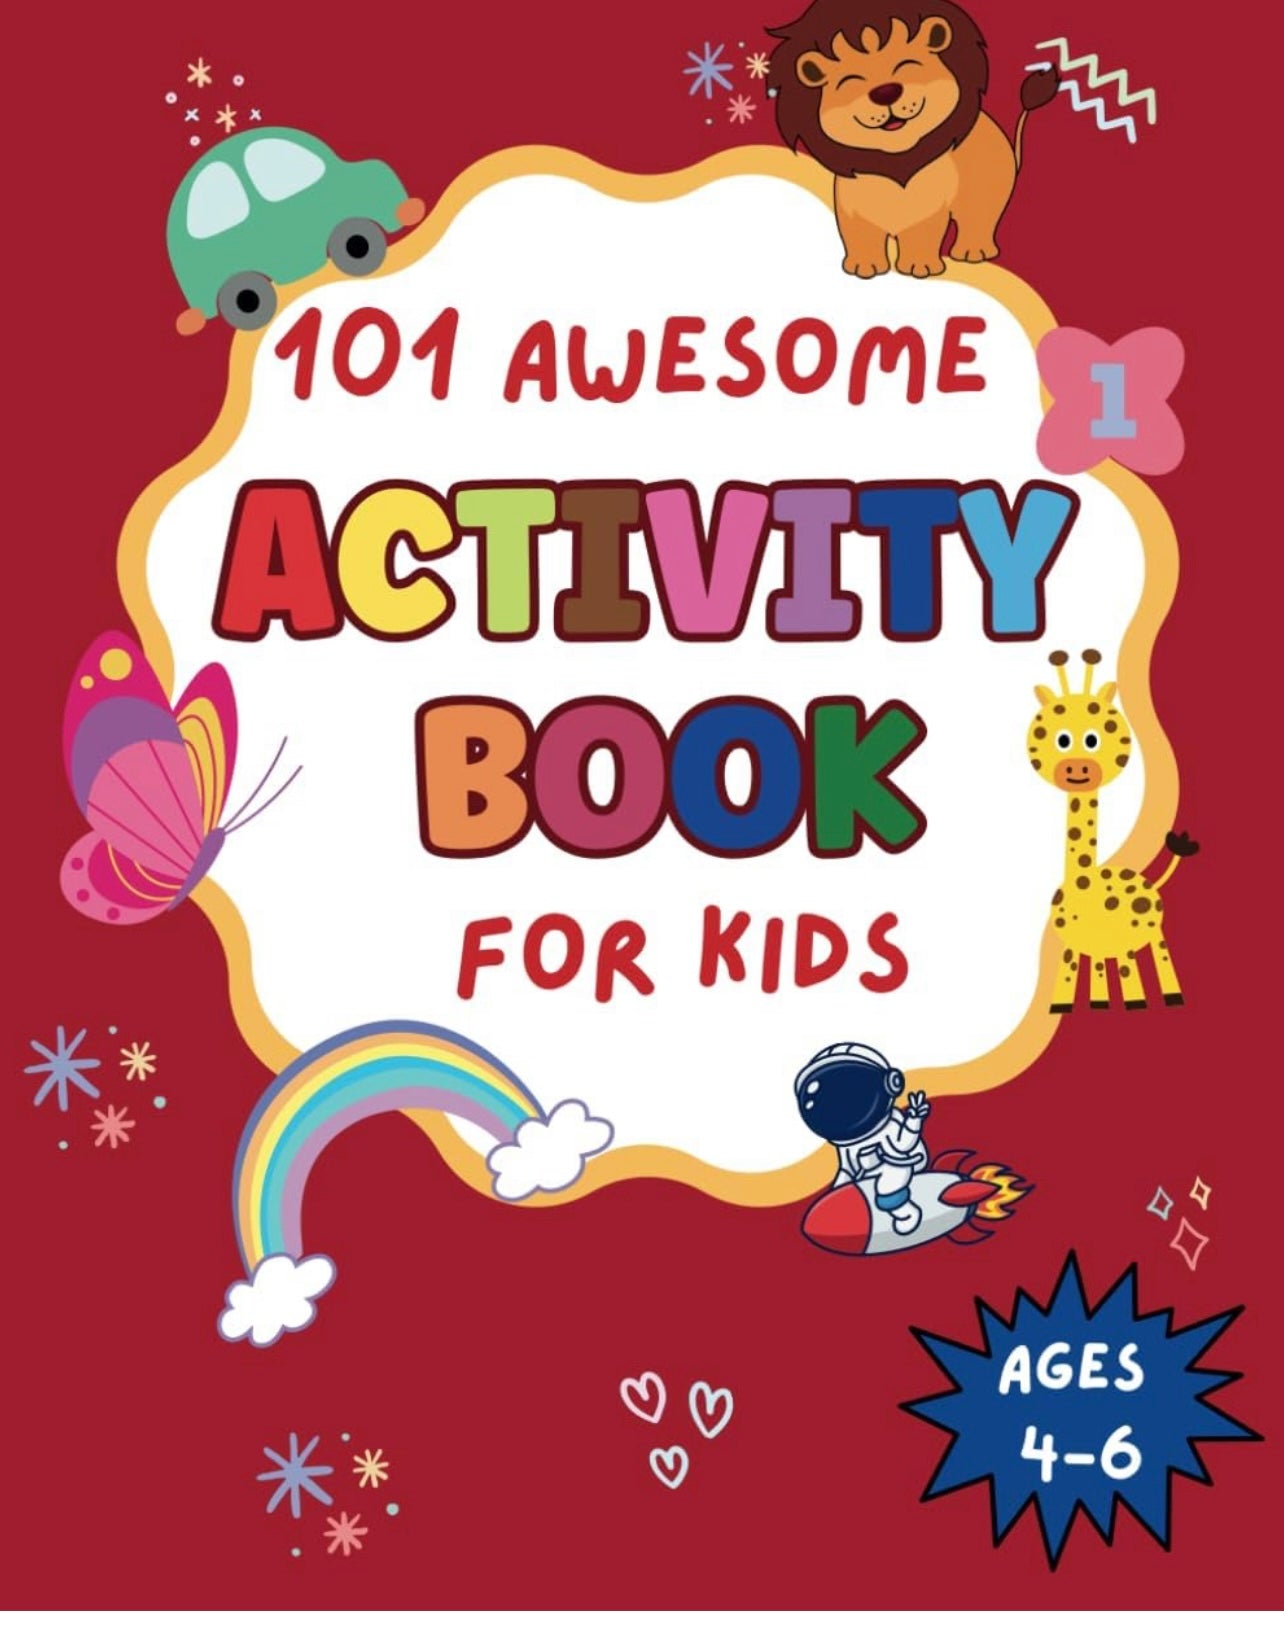 Libro de actividades para niños de 4 a 6 años